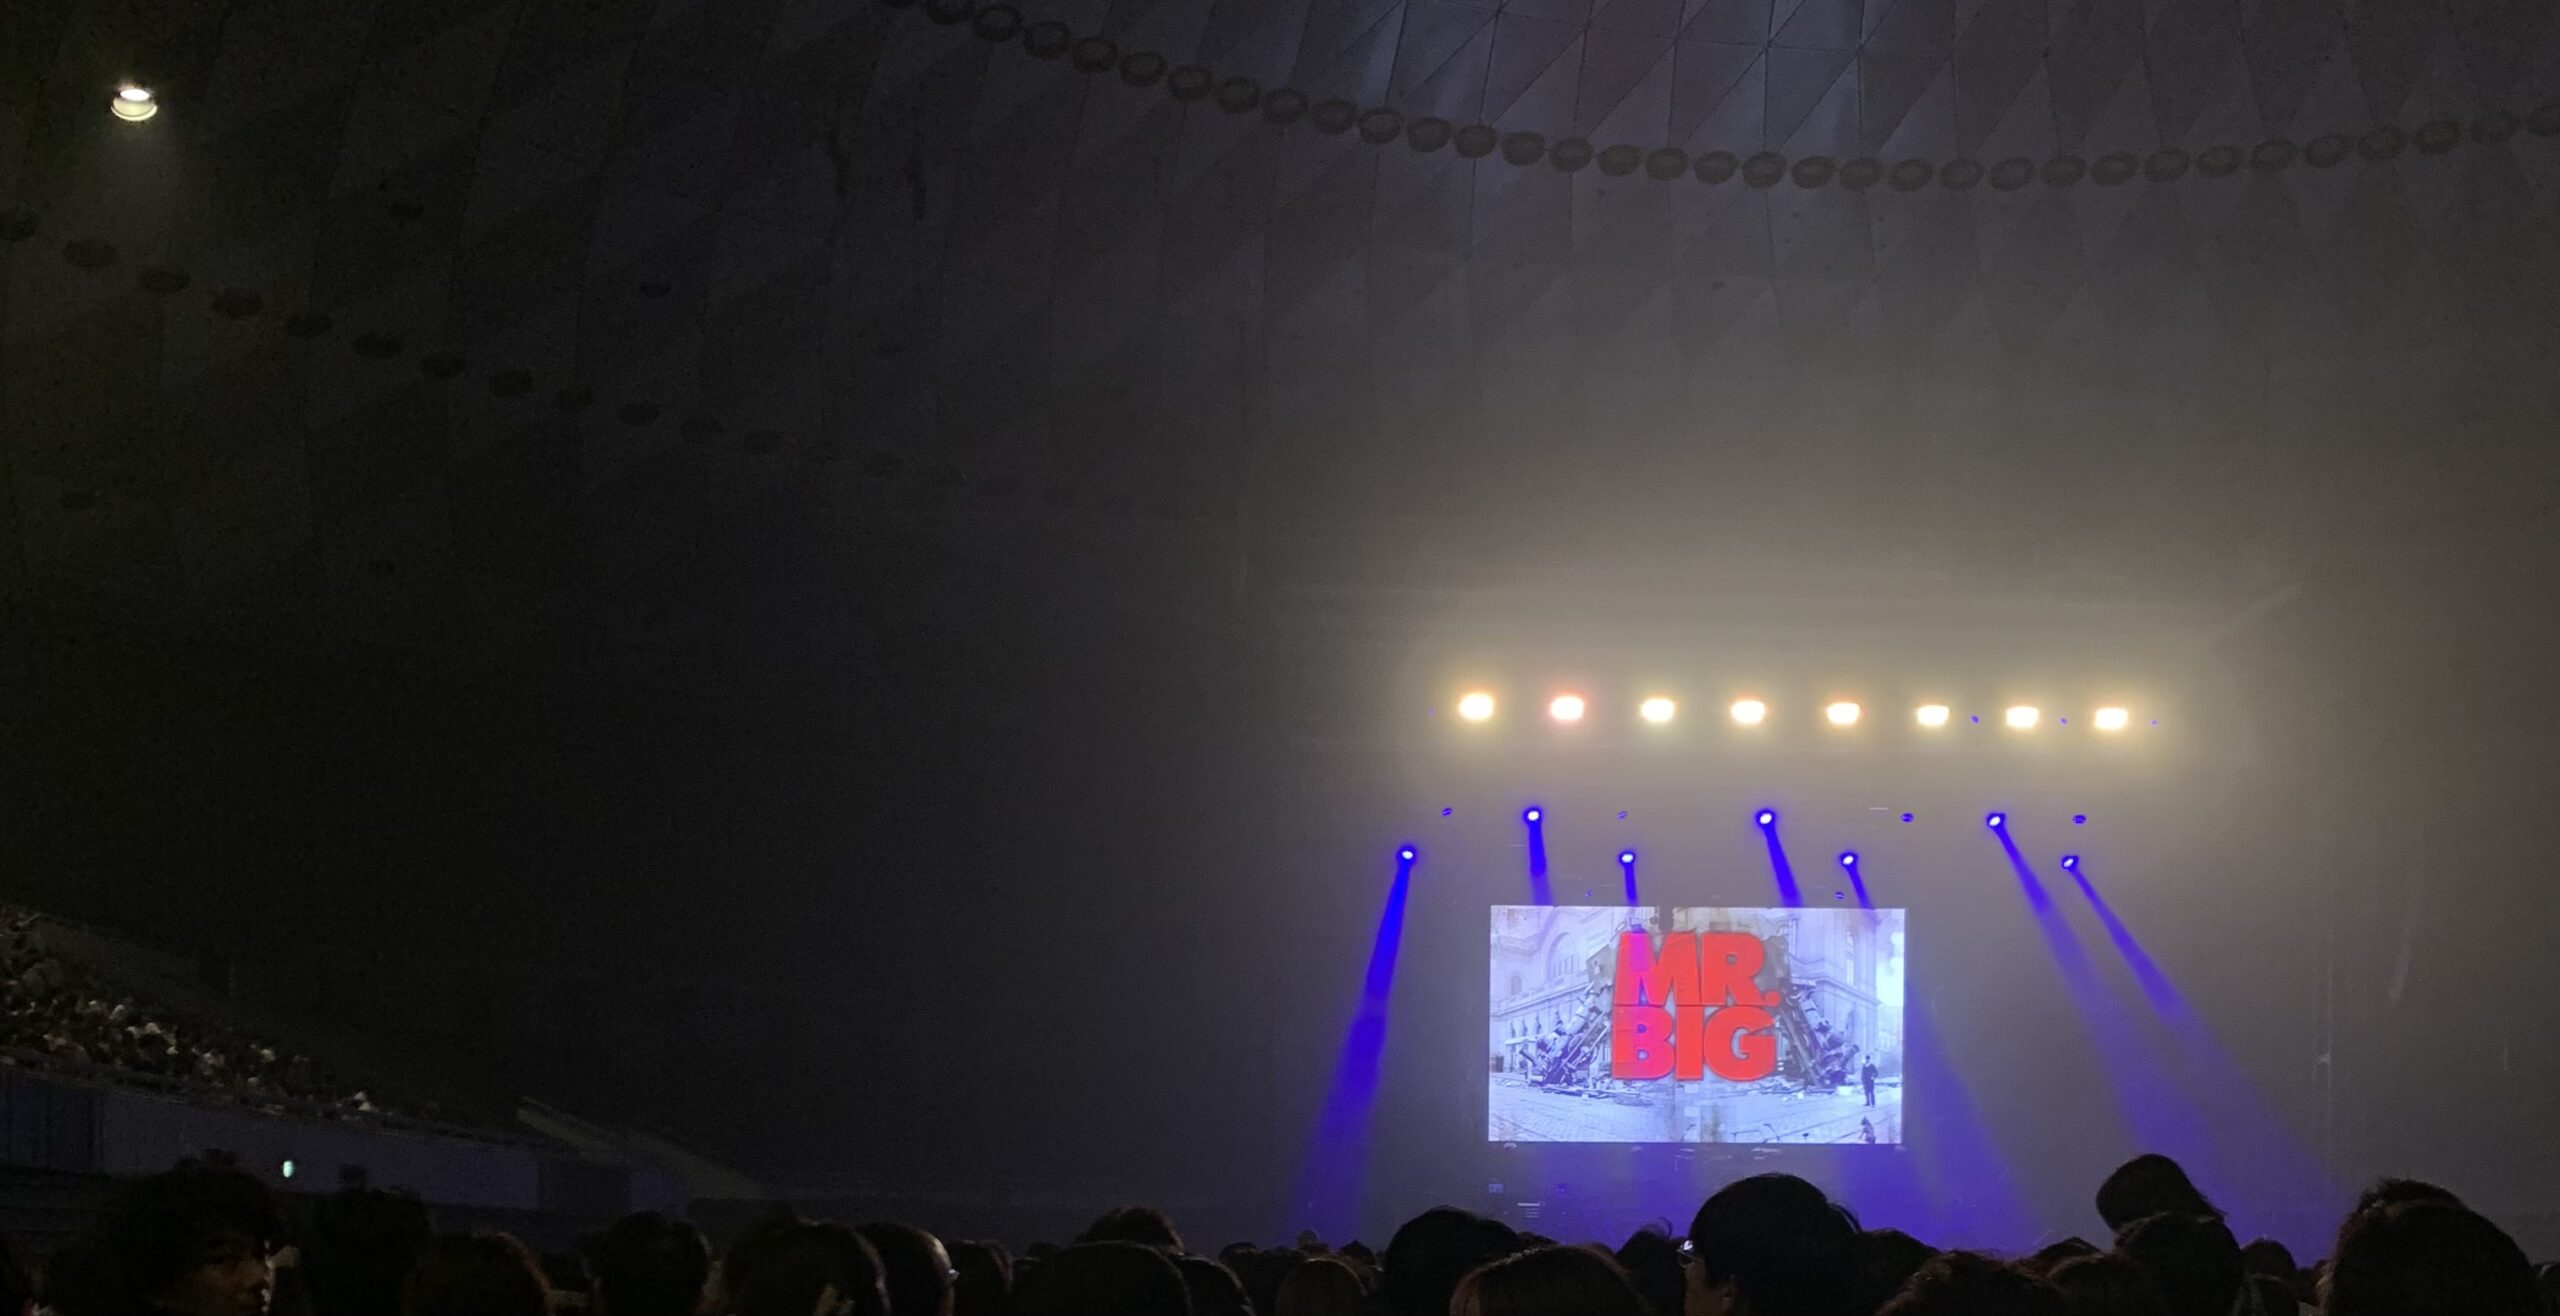 Asueアリーナ大阪で開催されたMr. Big大阪公演を観てきた